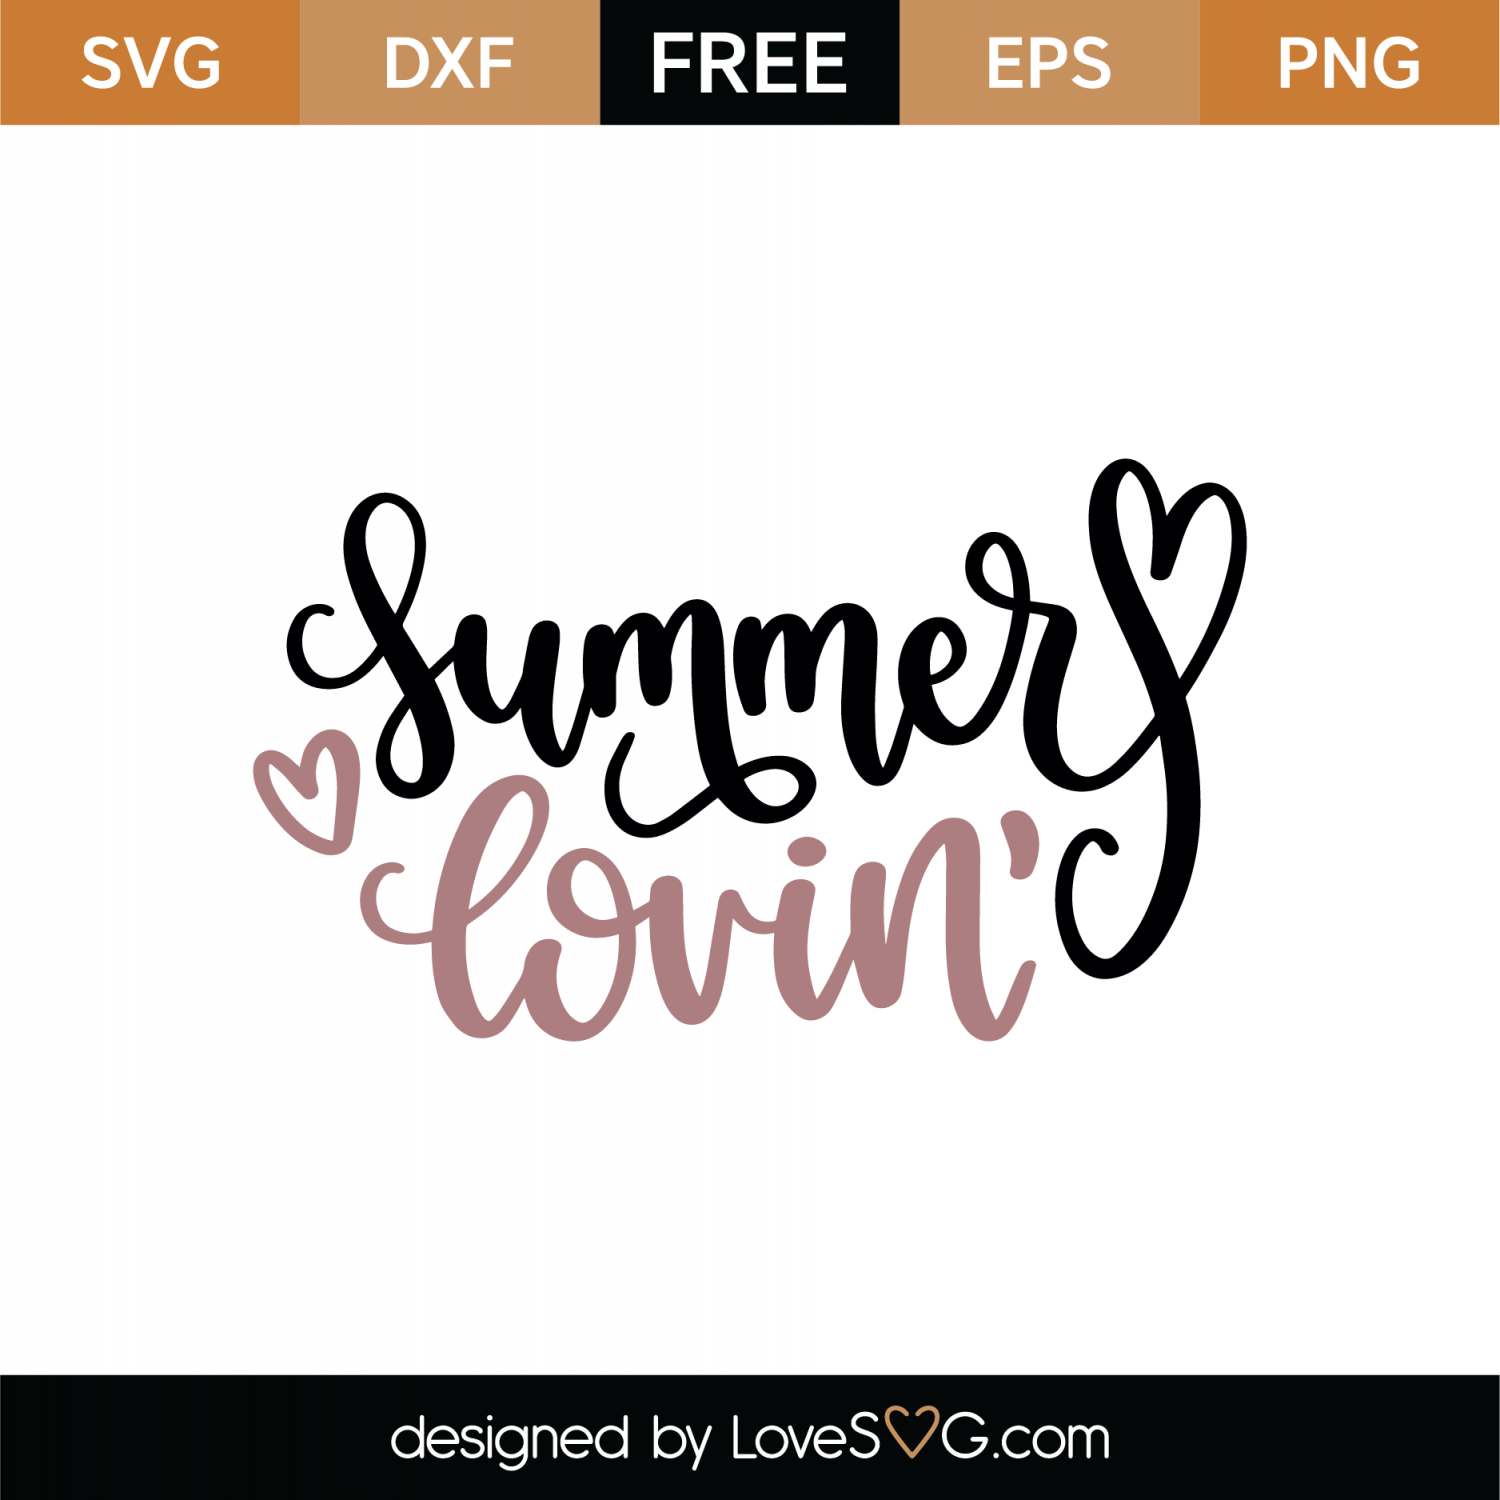 Download Free Summer Lovin' SVG Cut File | Lovesvg.com